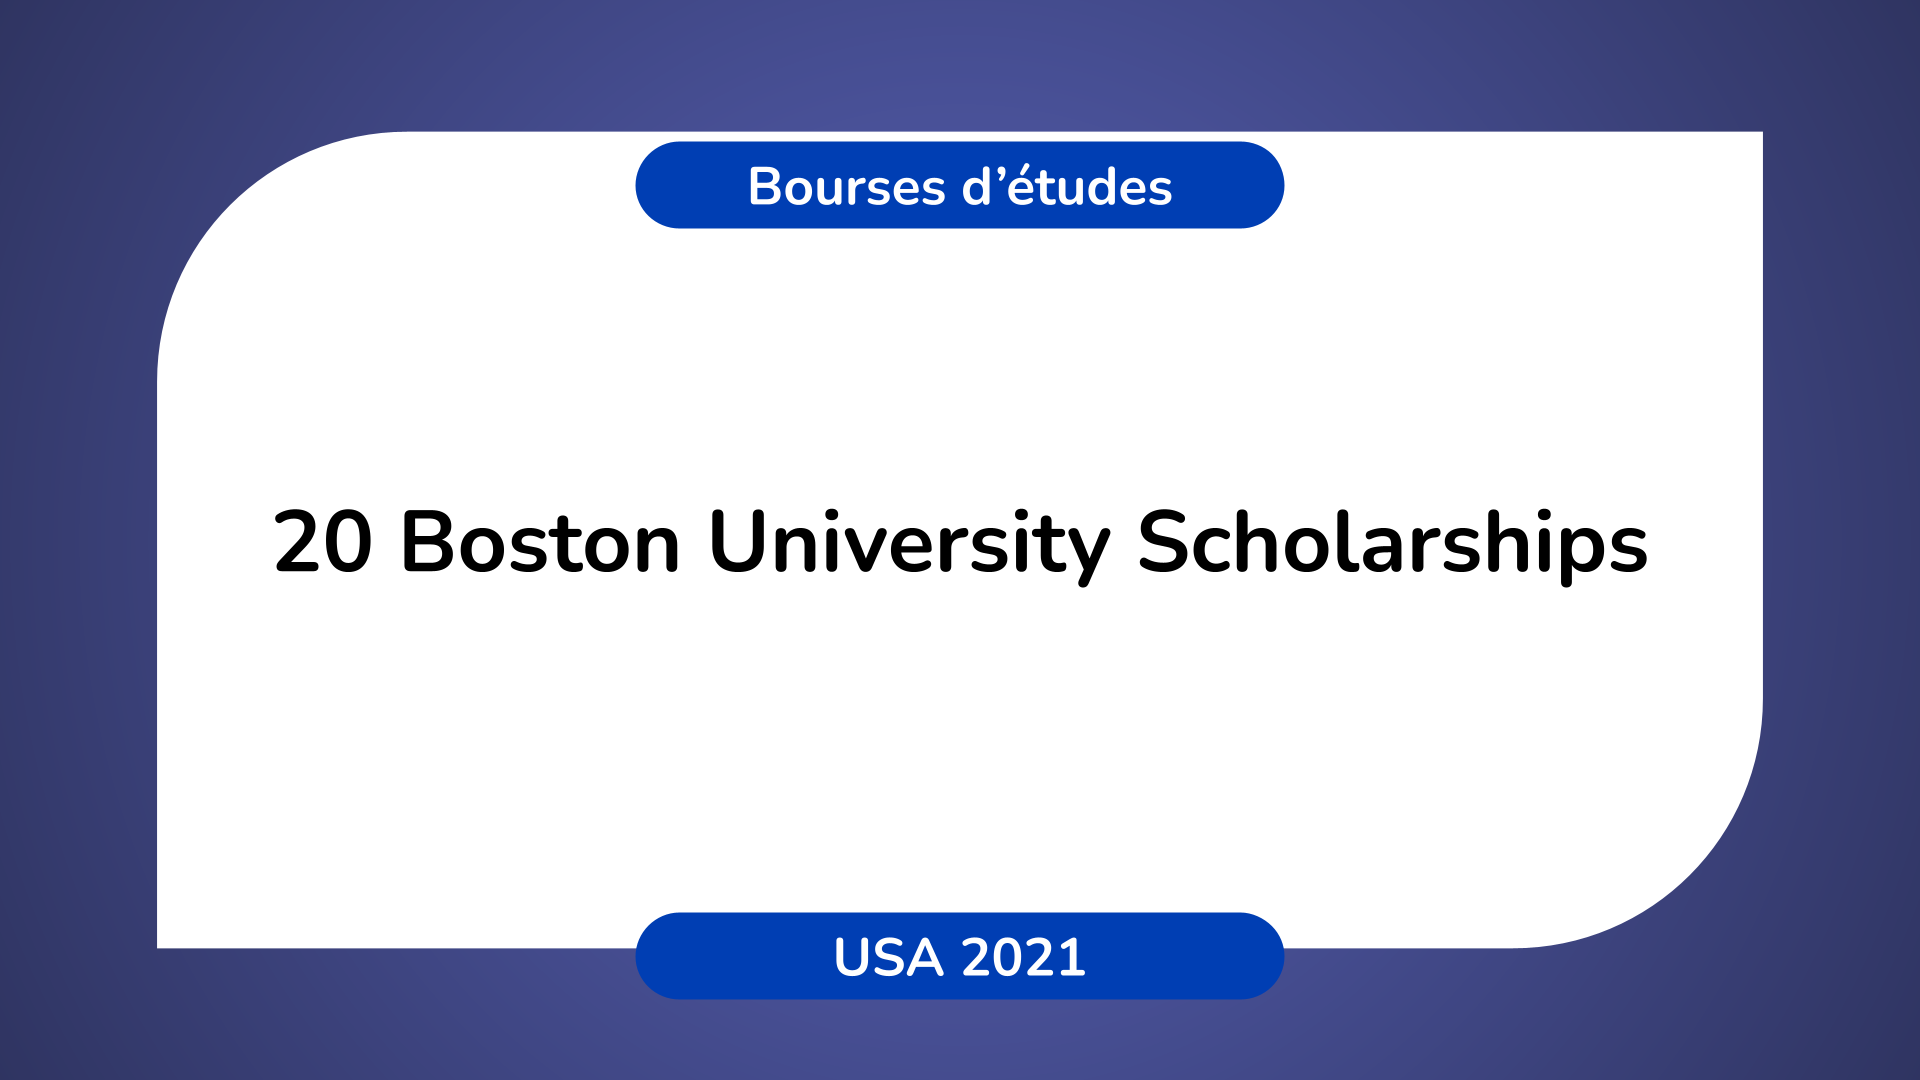 20 Boston University Scholarshipsin the USA in 2021